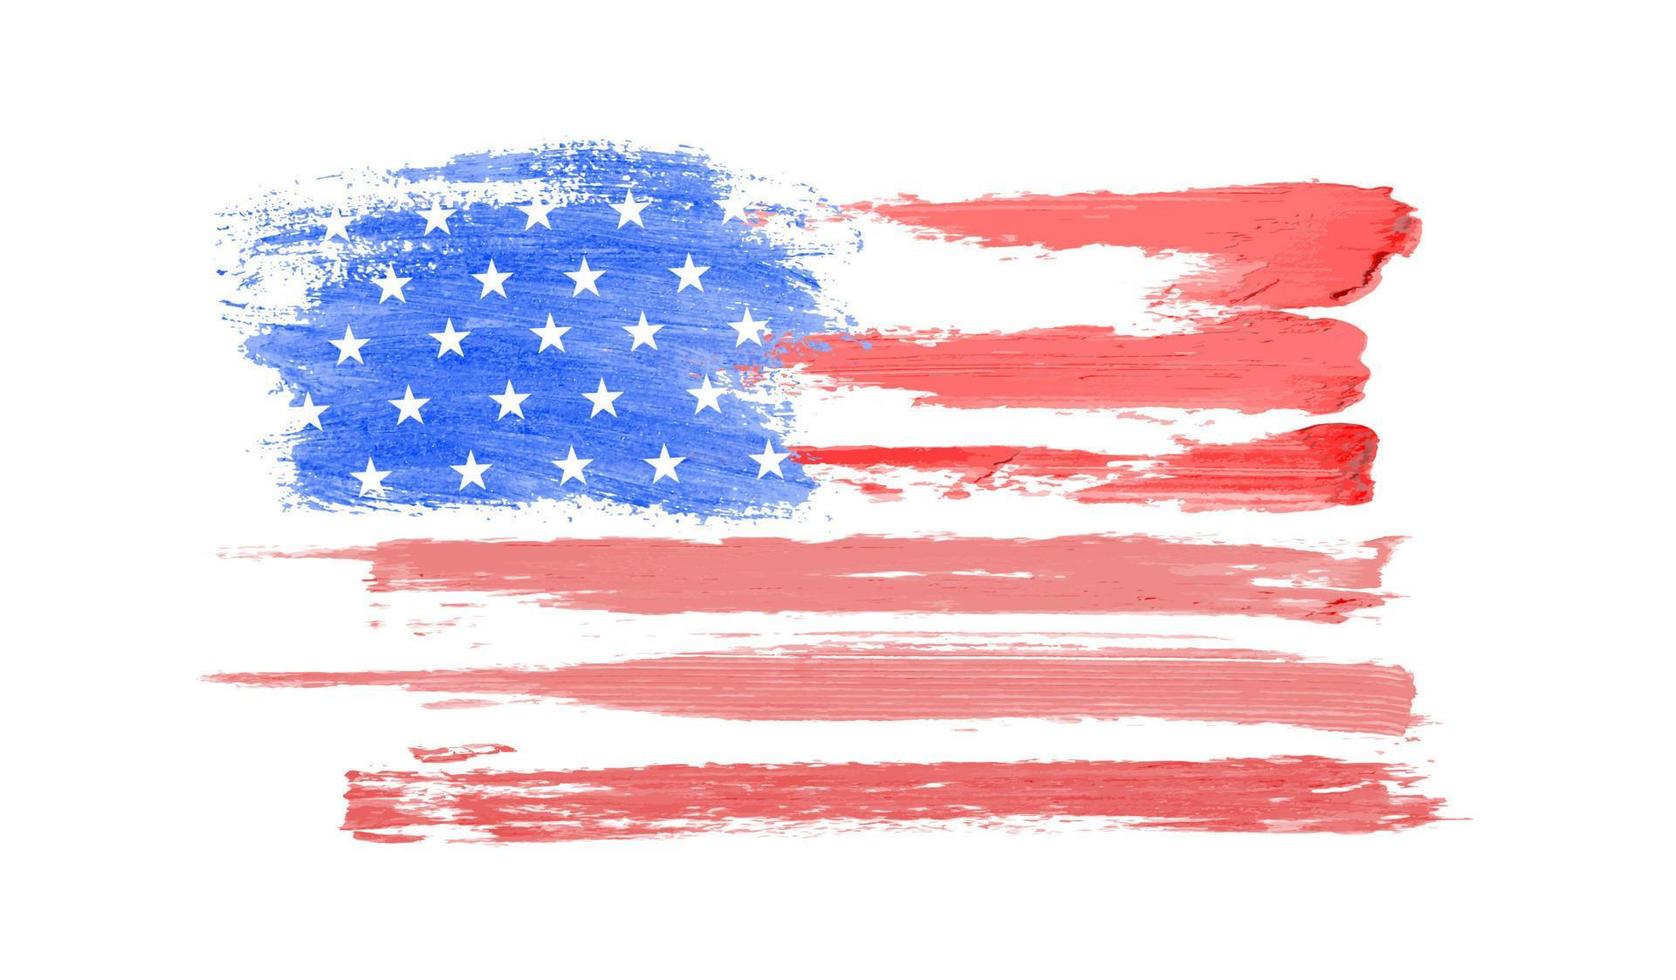 amerikan flagga, grange utstryker USA flagga, juli 4:e affisch vektor illustration